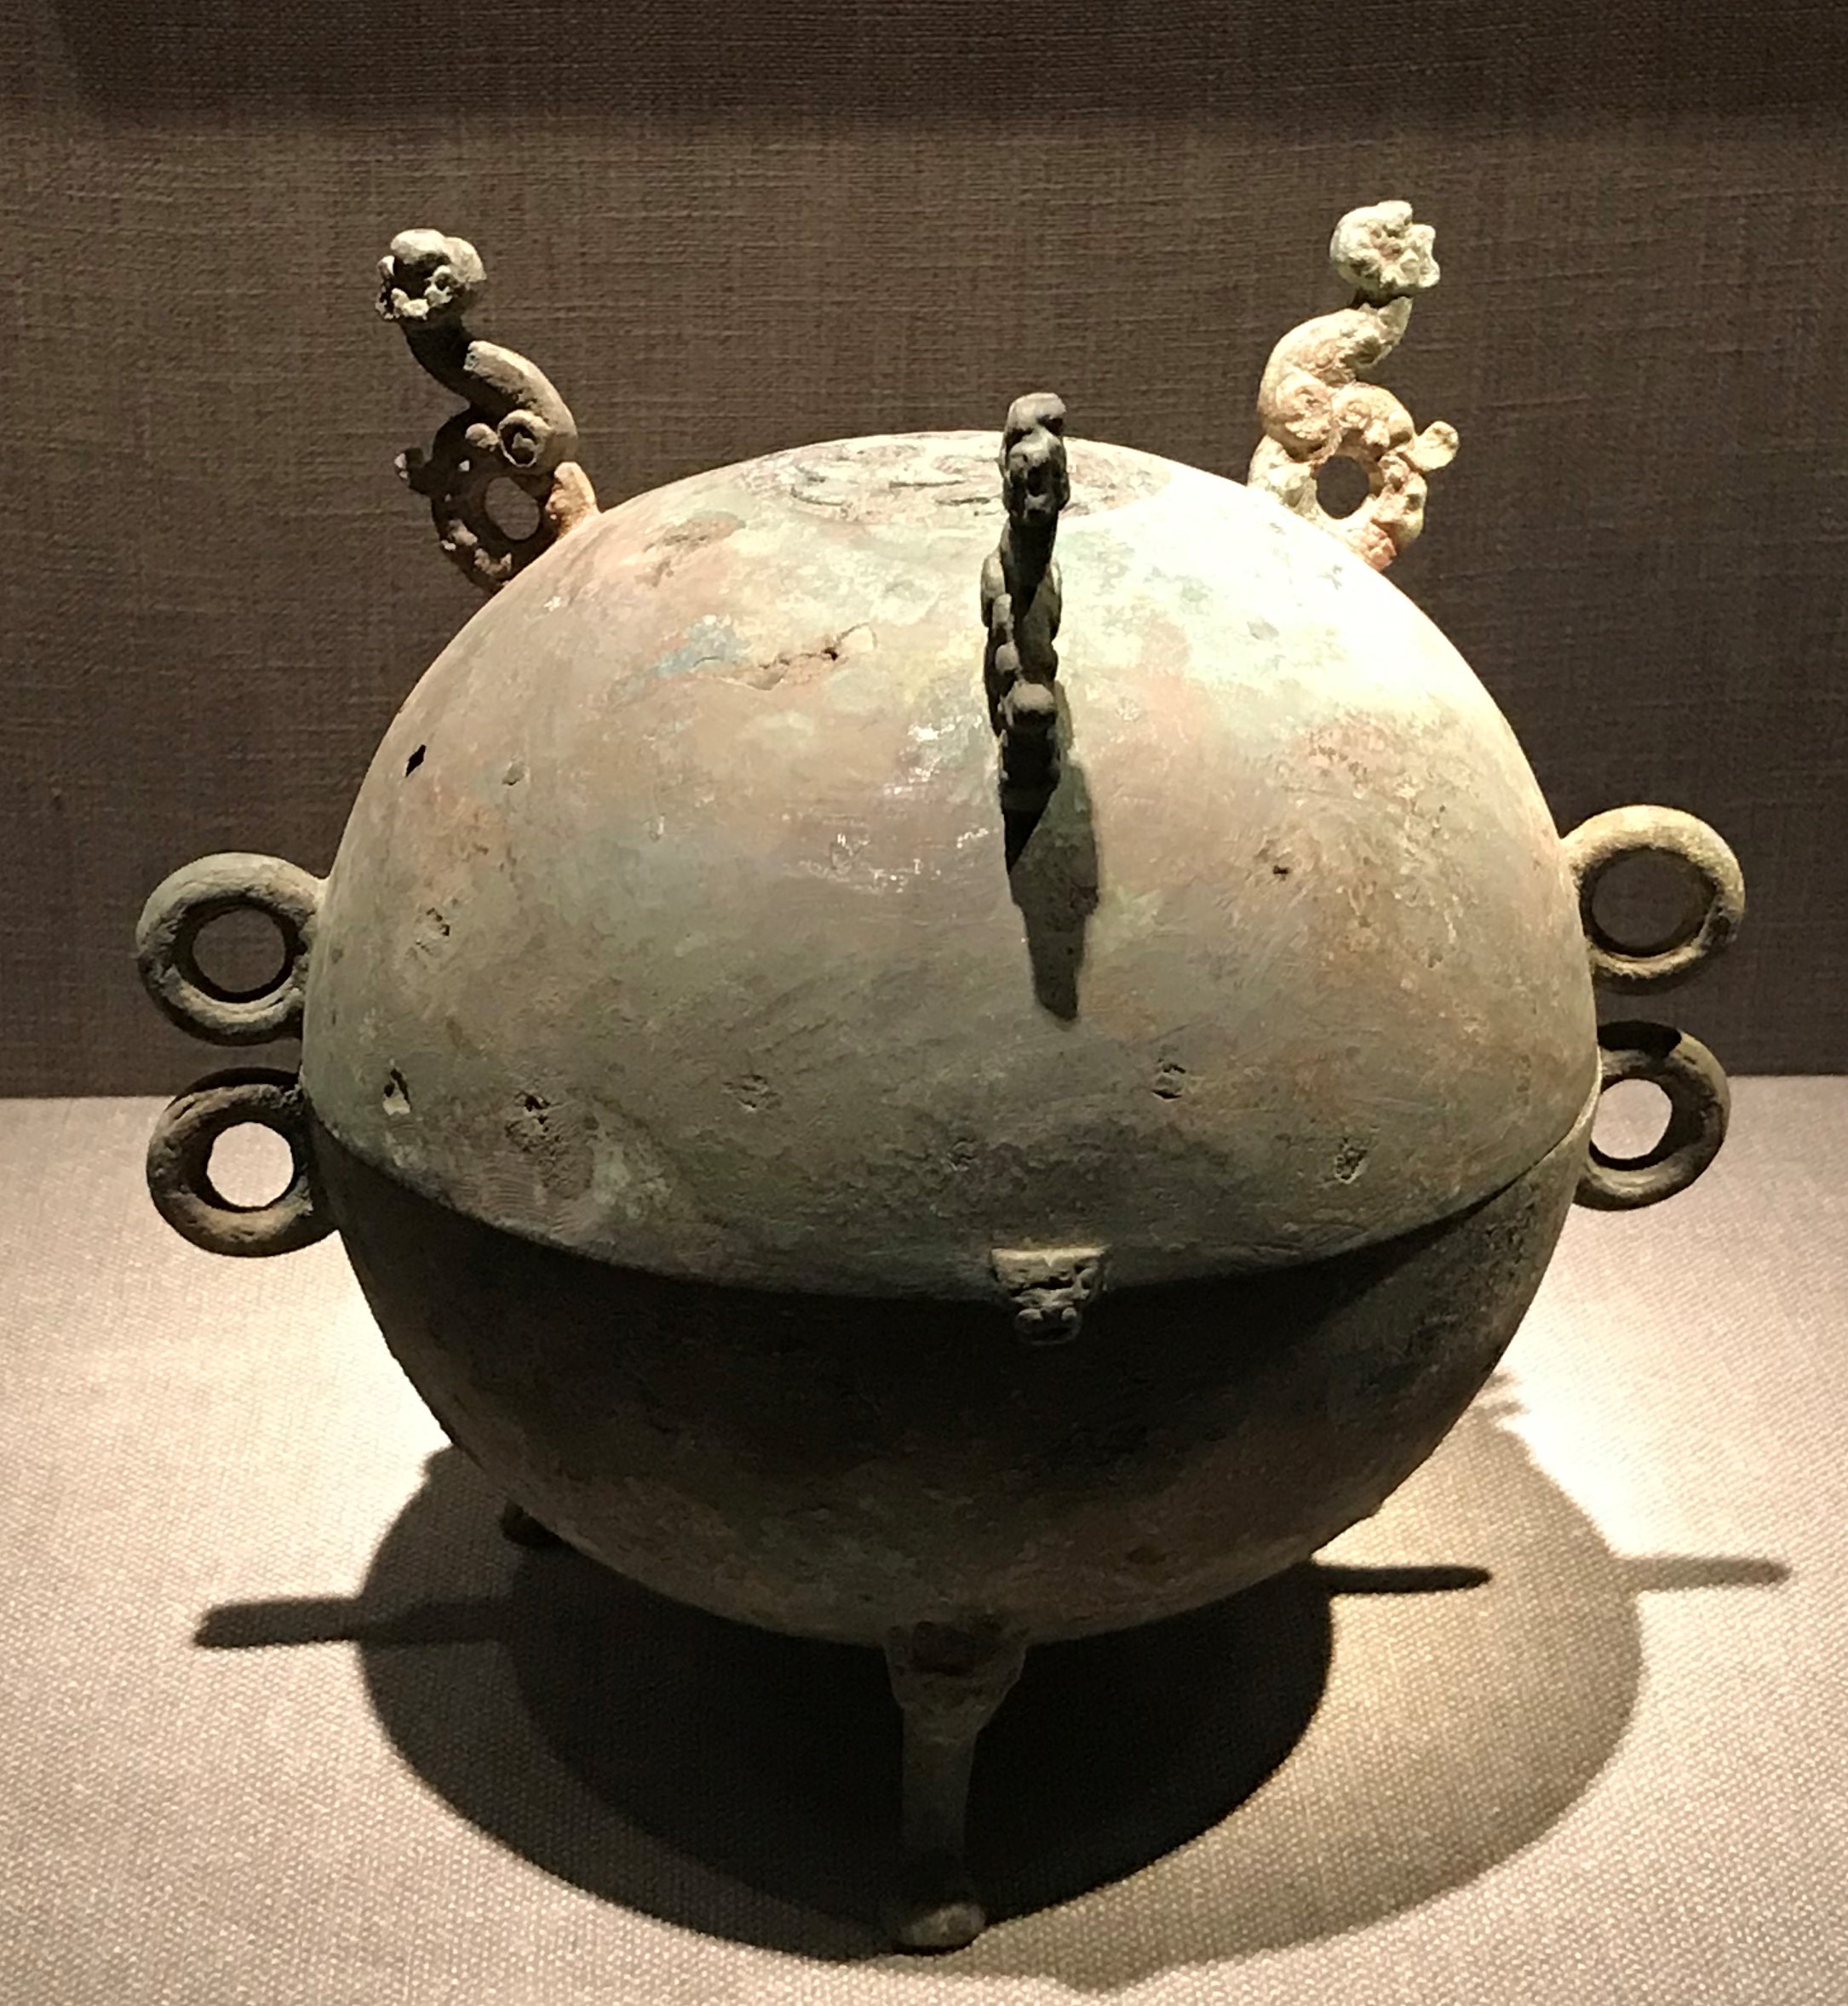 銅敦-先秦時代-常設展F２-成都博物館